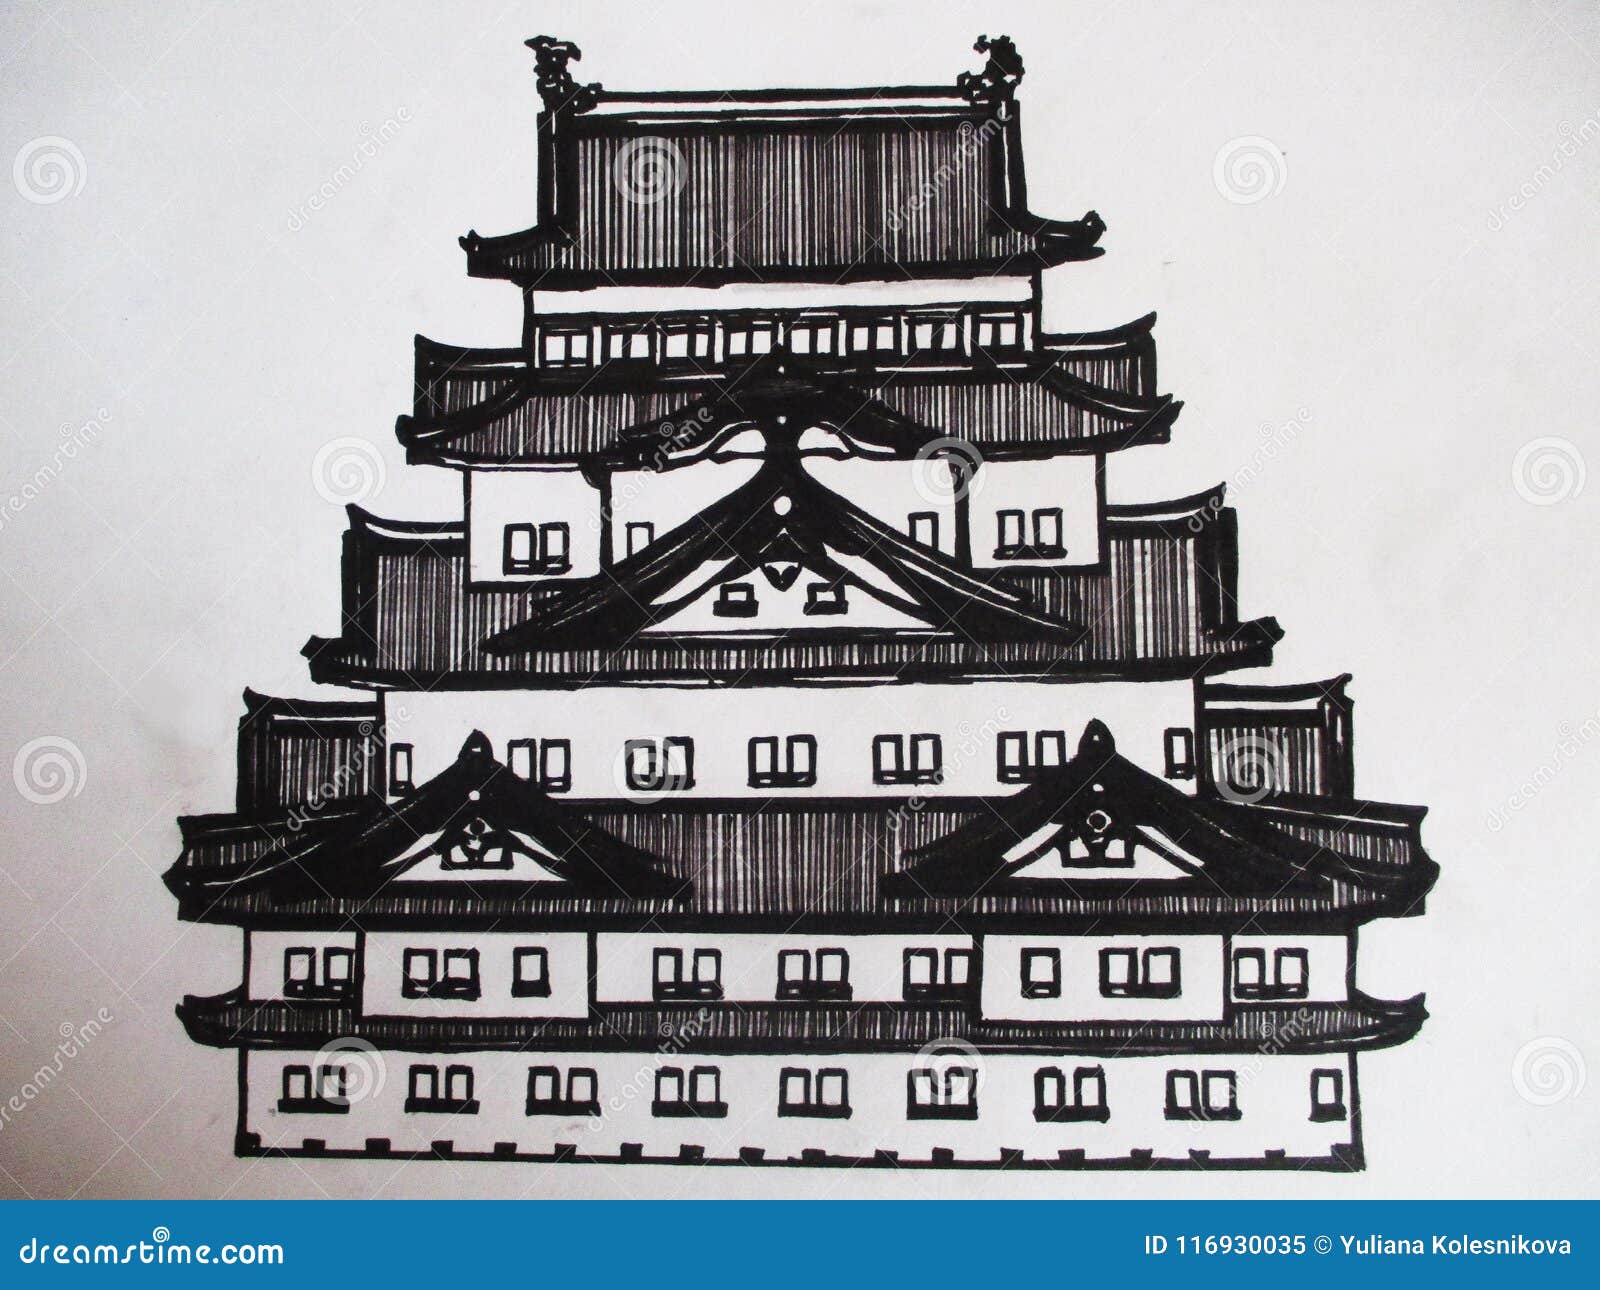 Pixxprint Temple Japonais à lautomne 100x70 sur Toile Format 